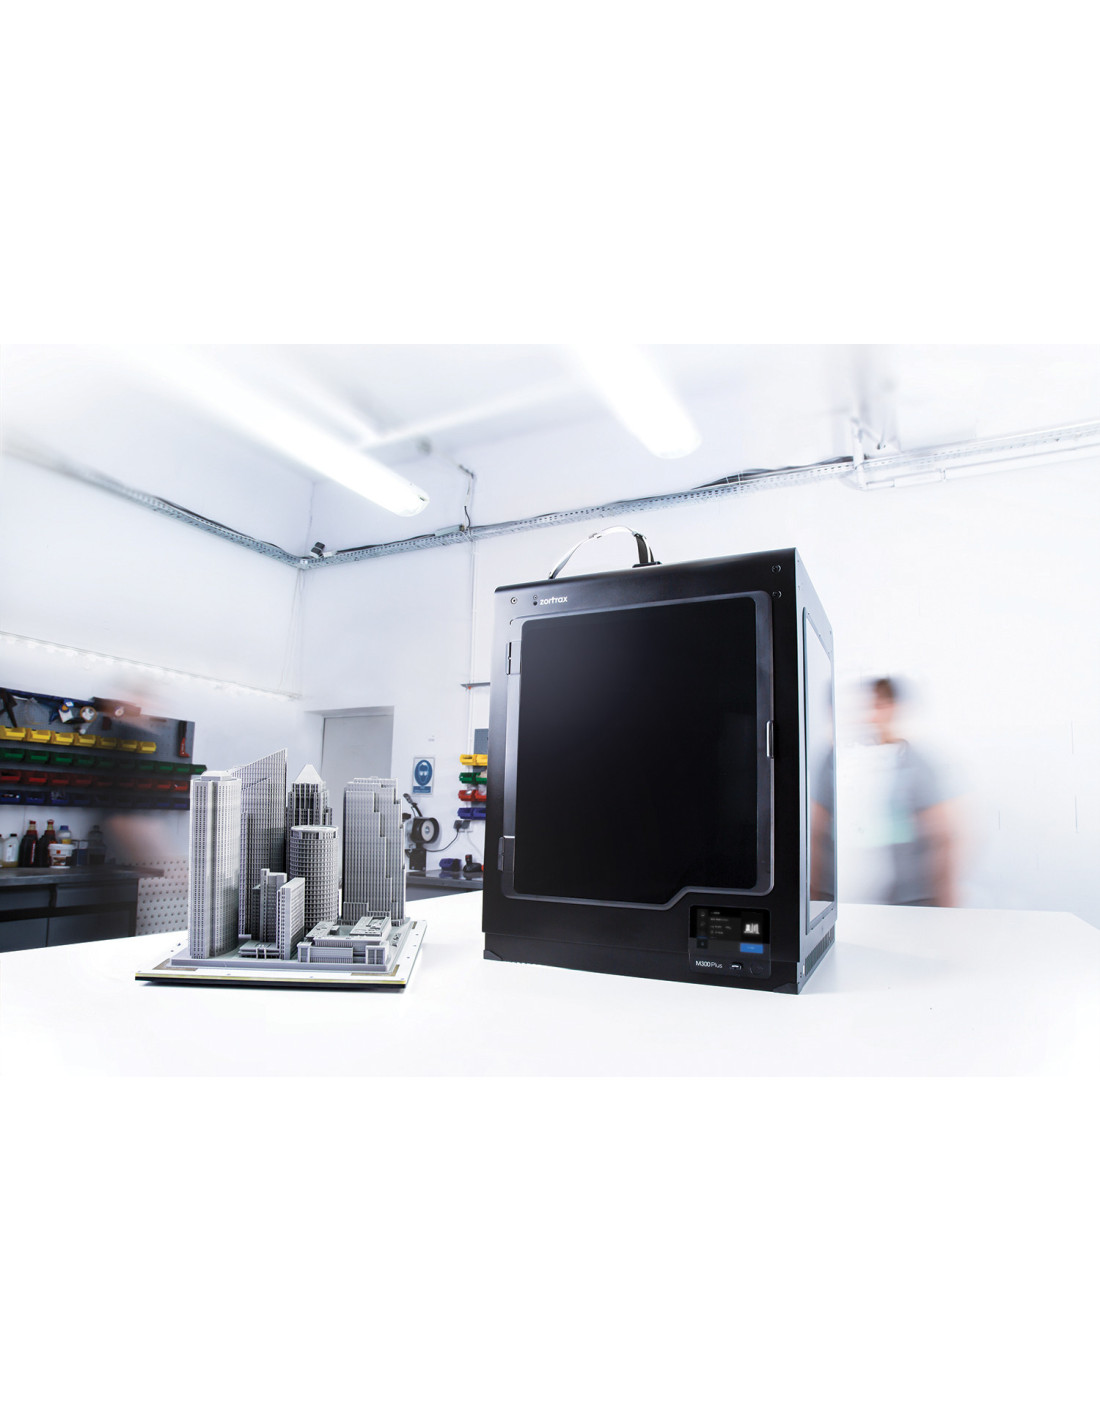 Zortrax M300 Plus - imprimante 3D professionnelle